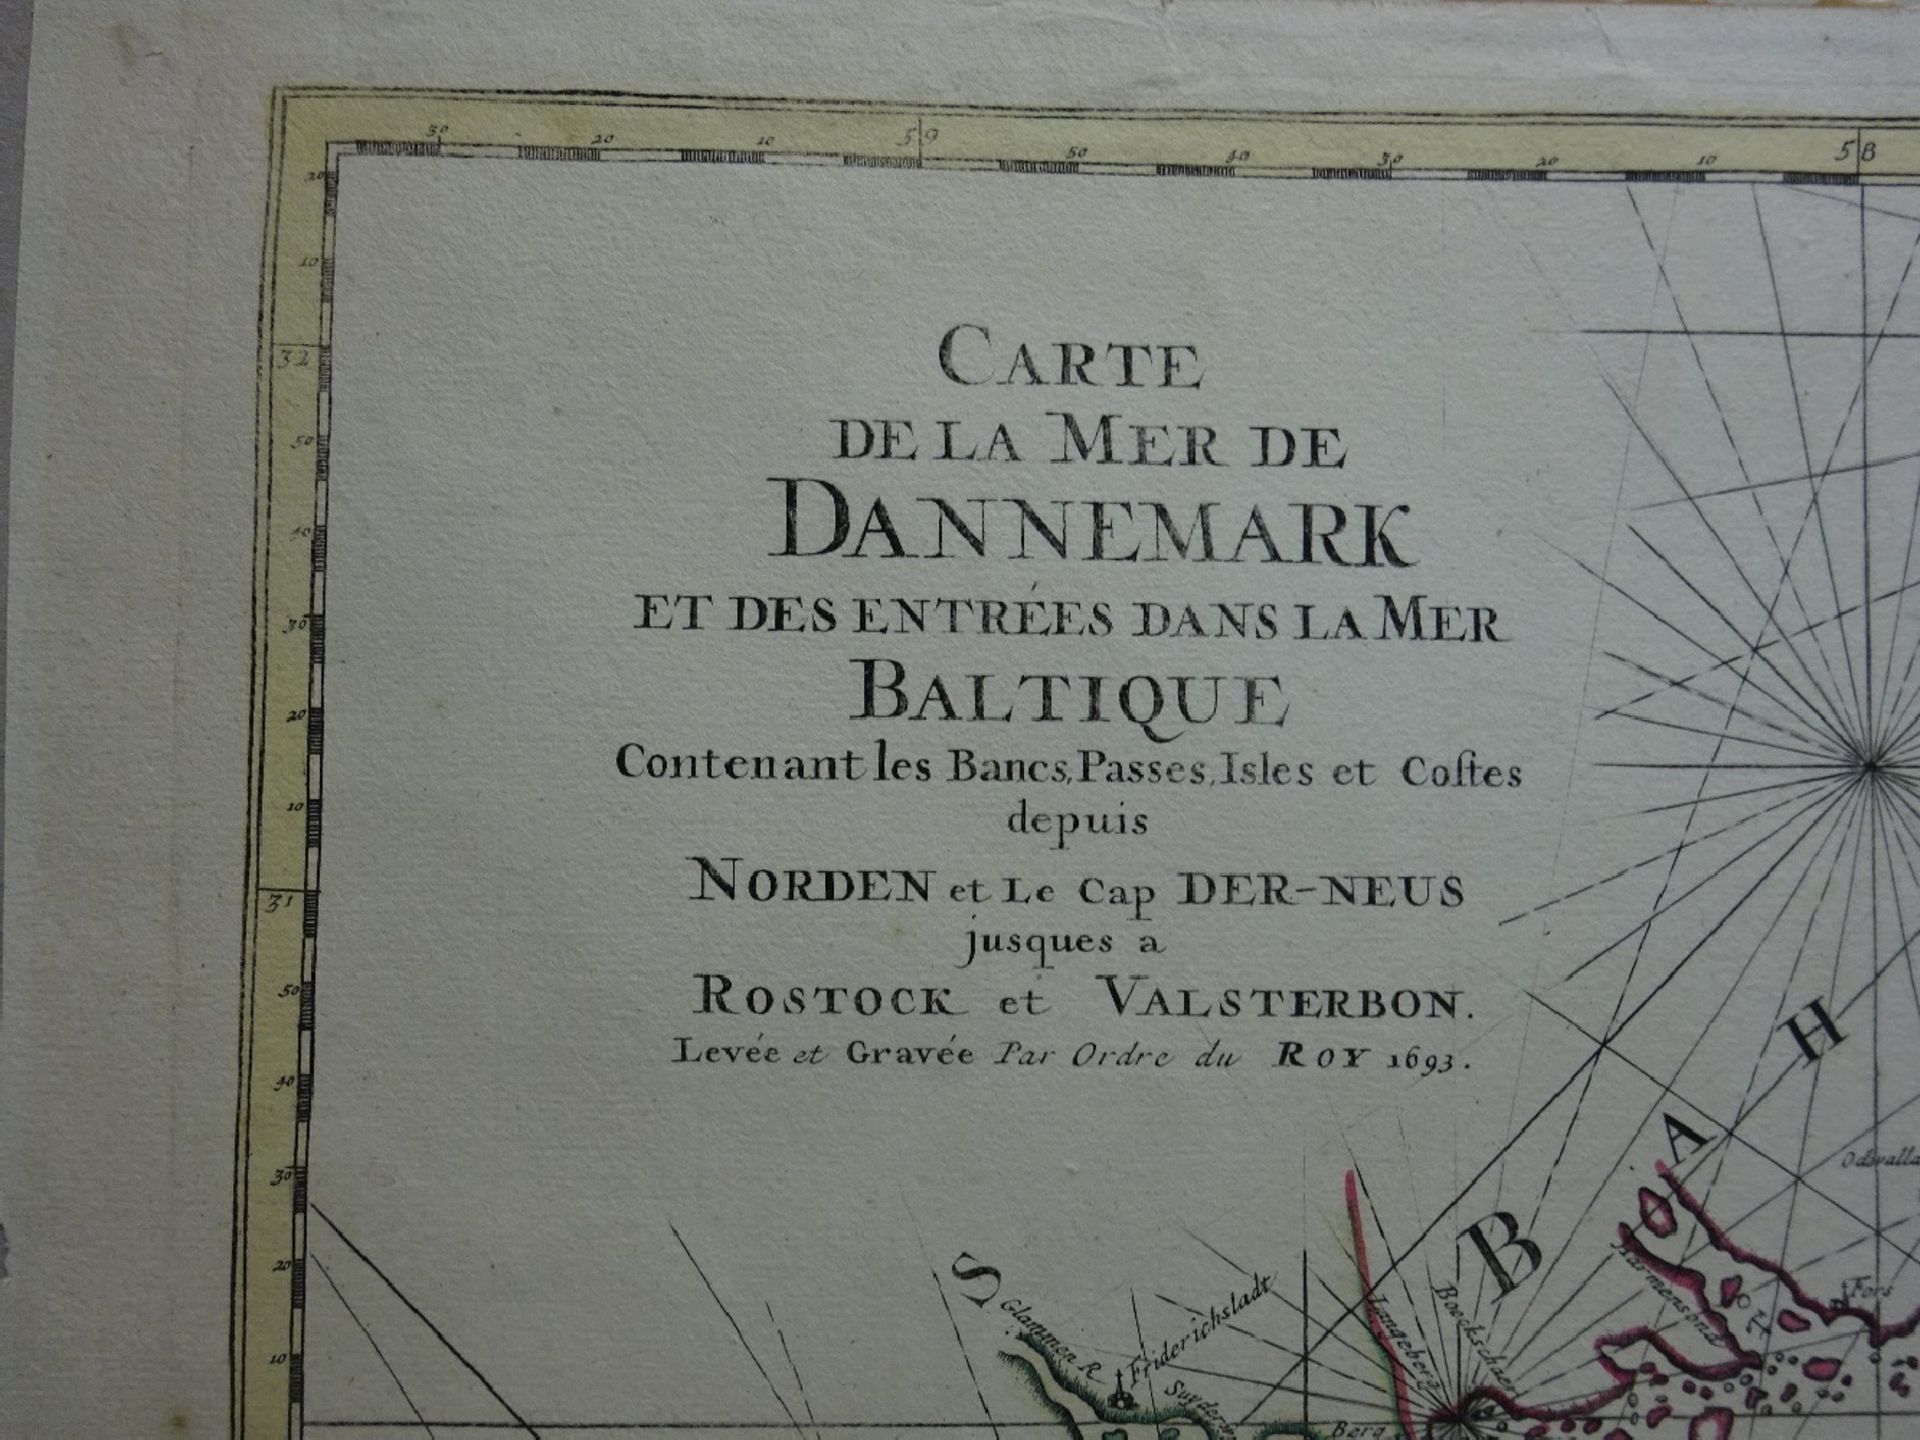 Carte de la Mer de Dannemark - Image 3 of 7